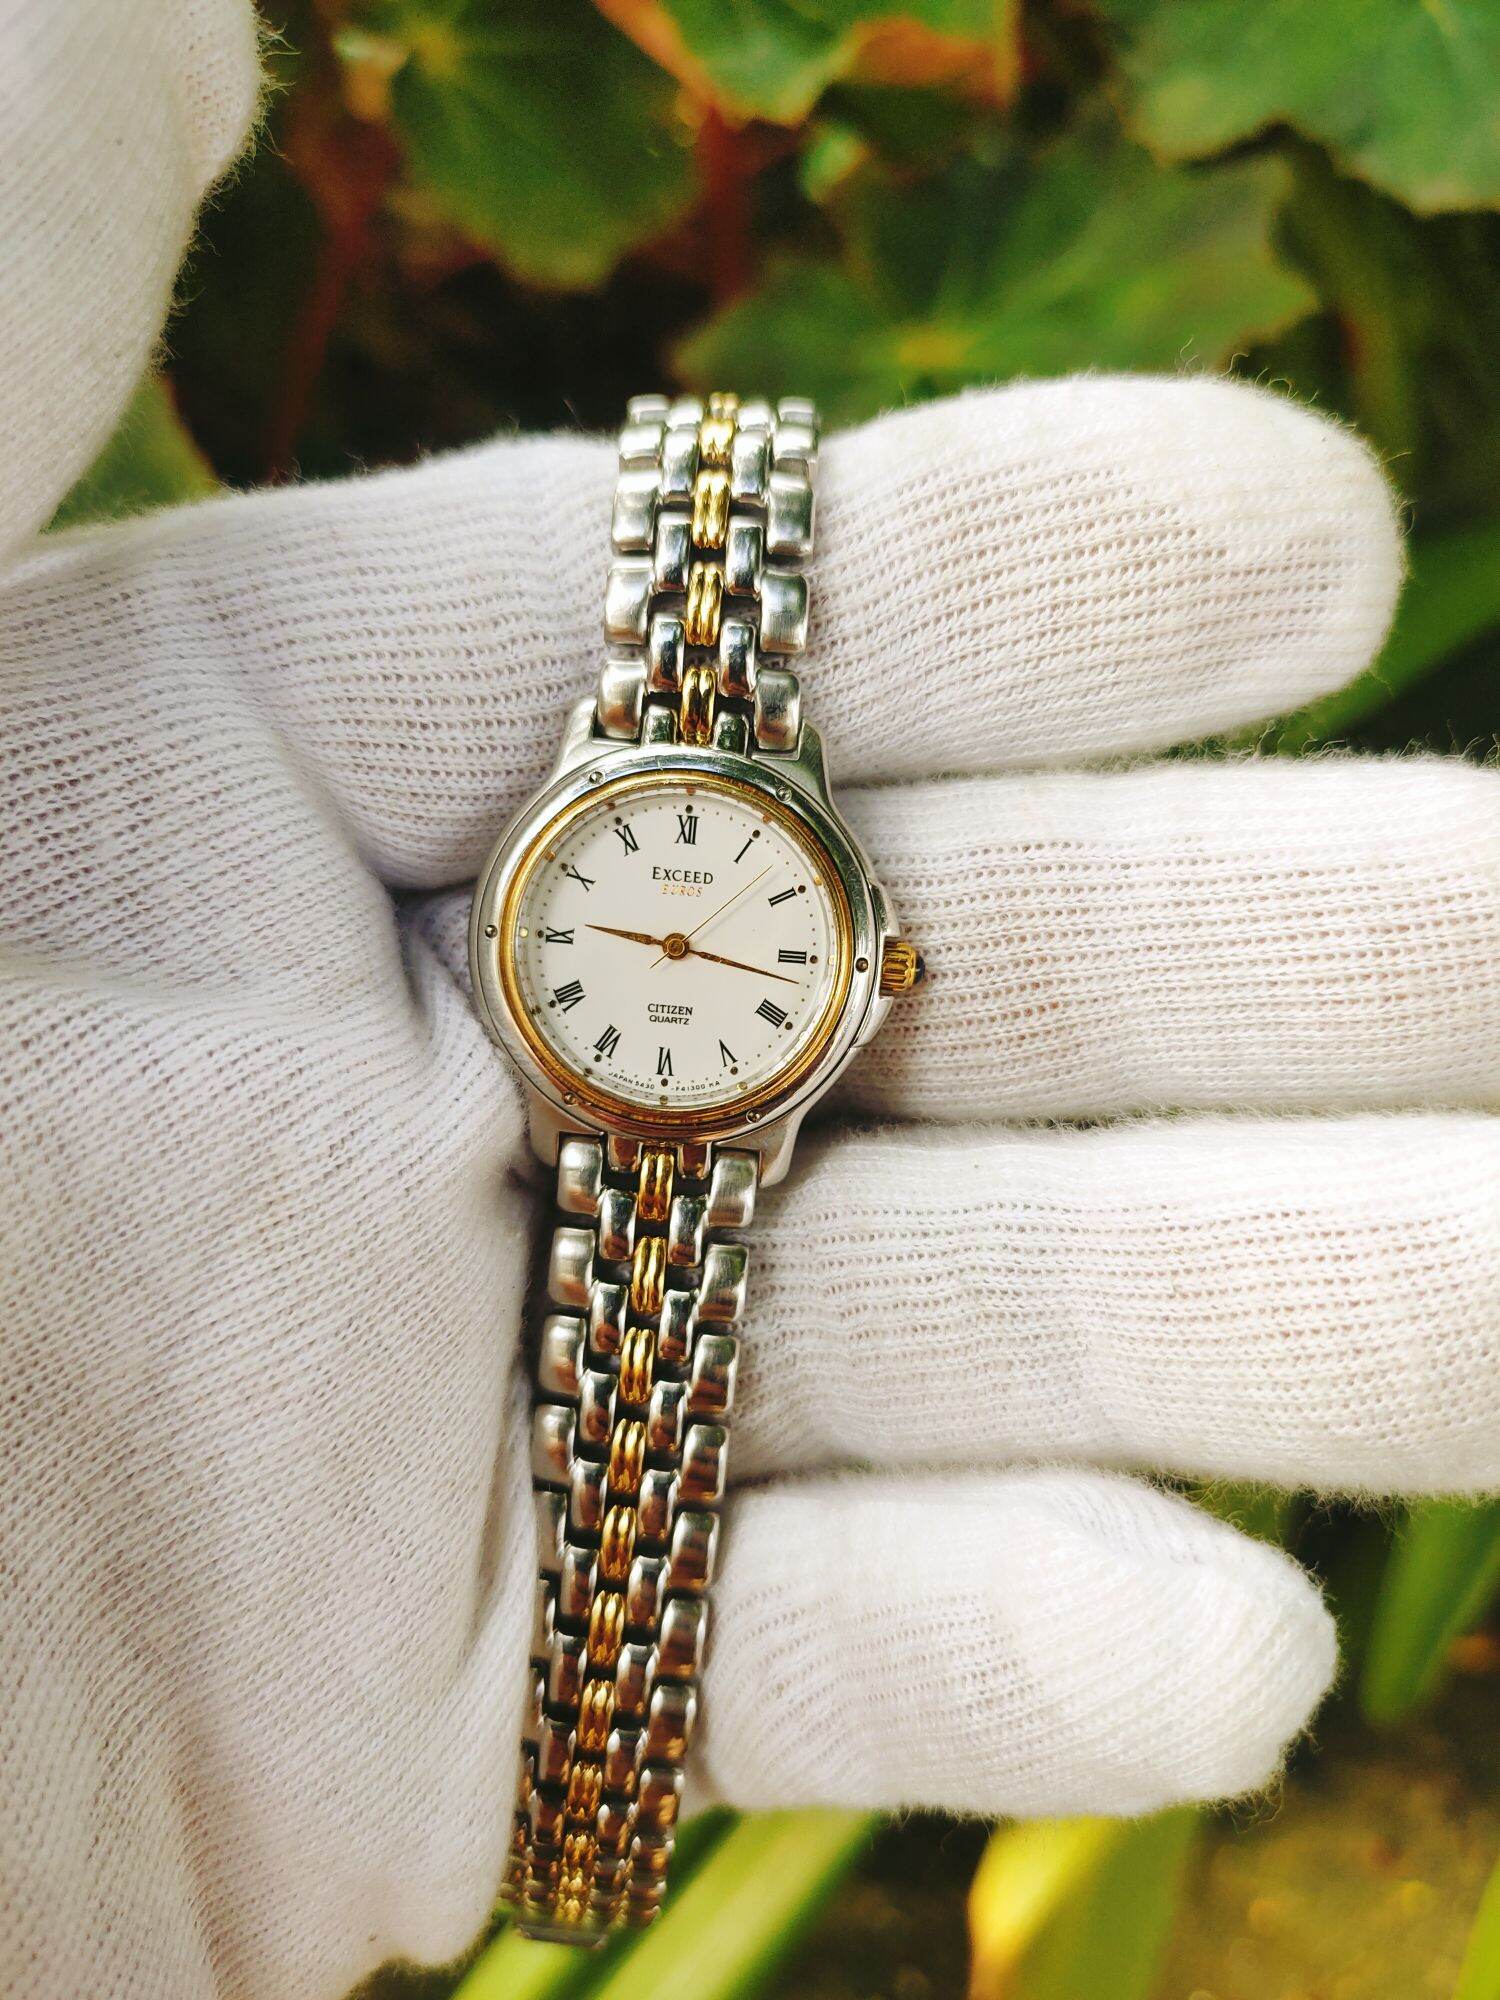 Đồng hồ Citizen exceed nữ, dây khóa lắc đờ mi đẹp, size 24mm, độ mới cao thumbnail